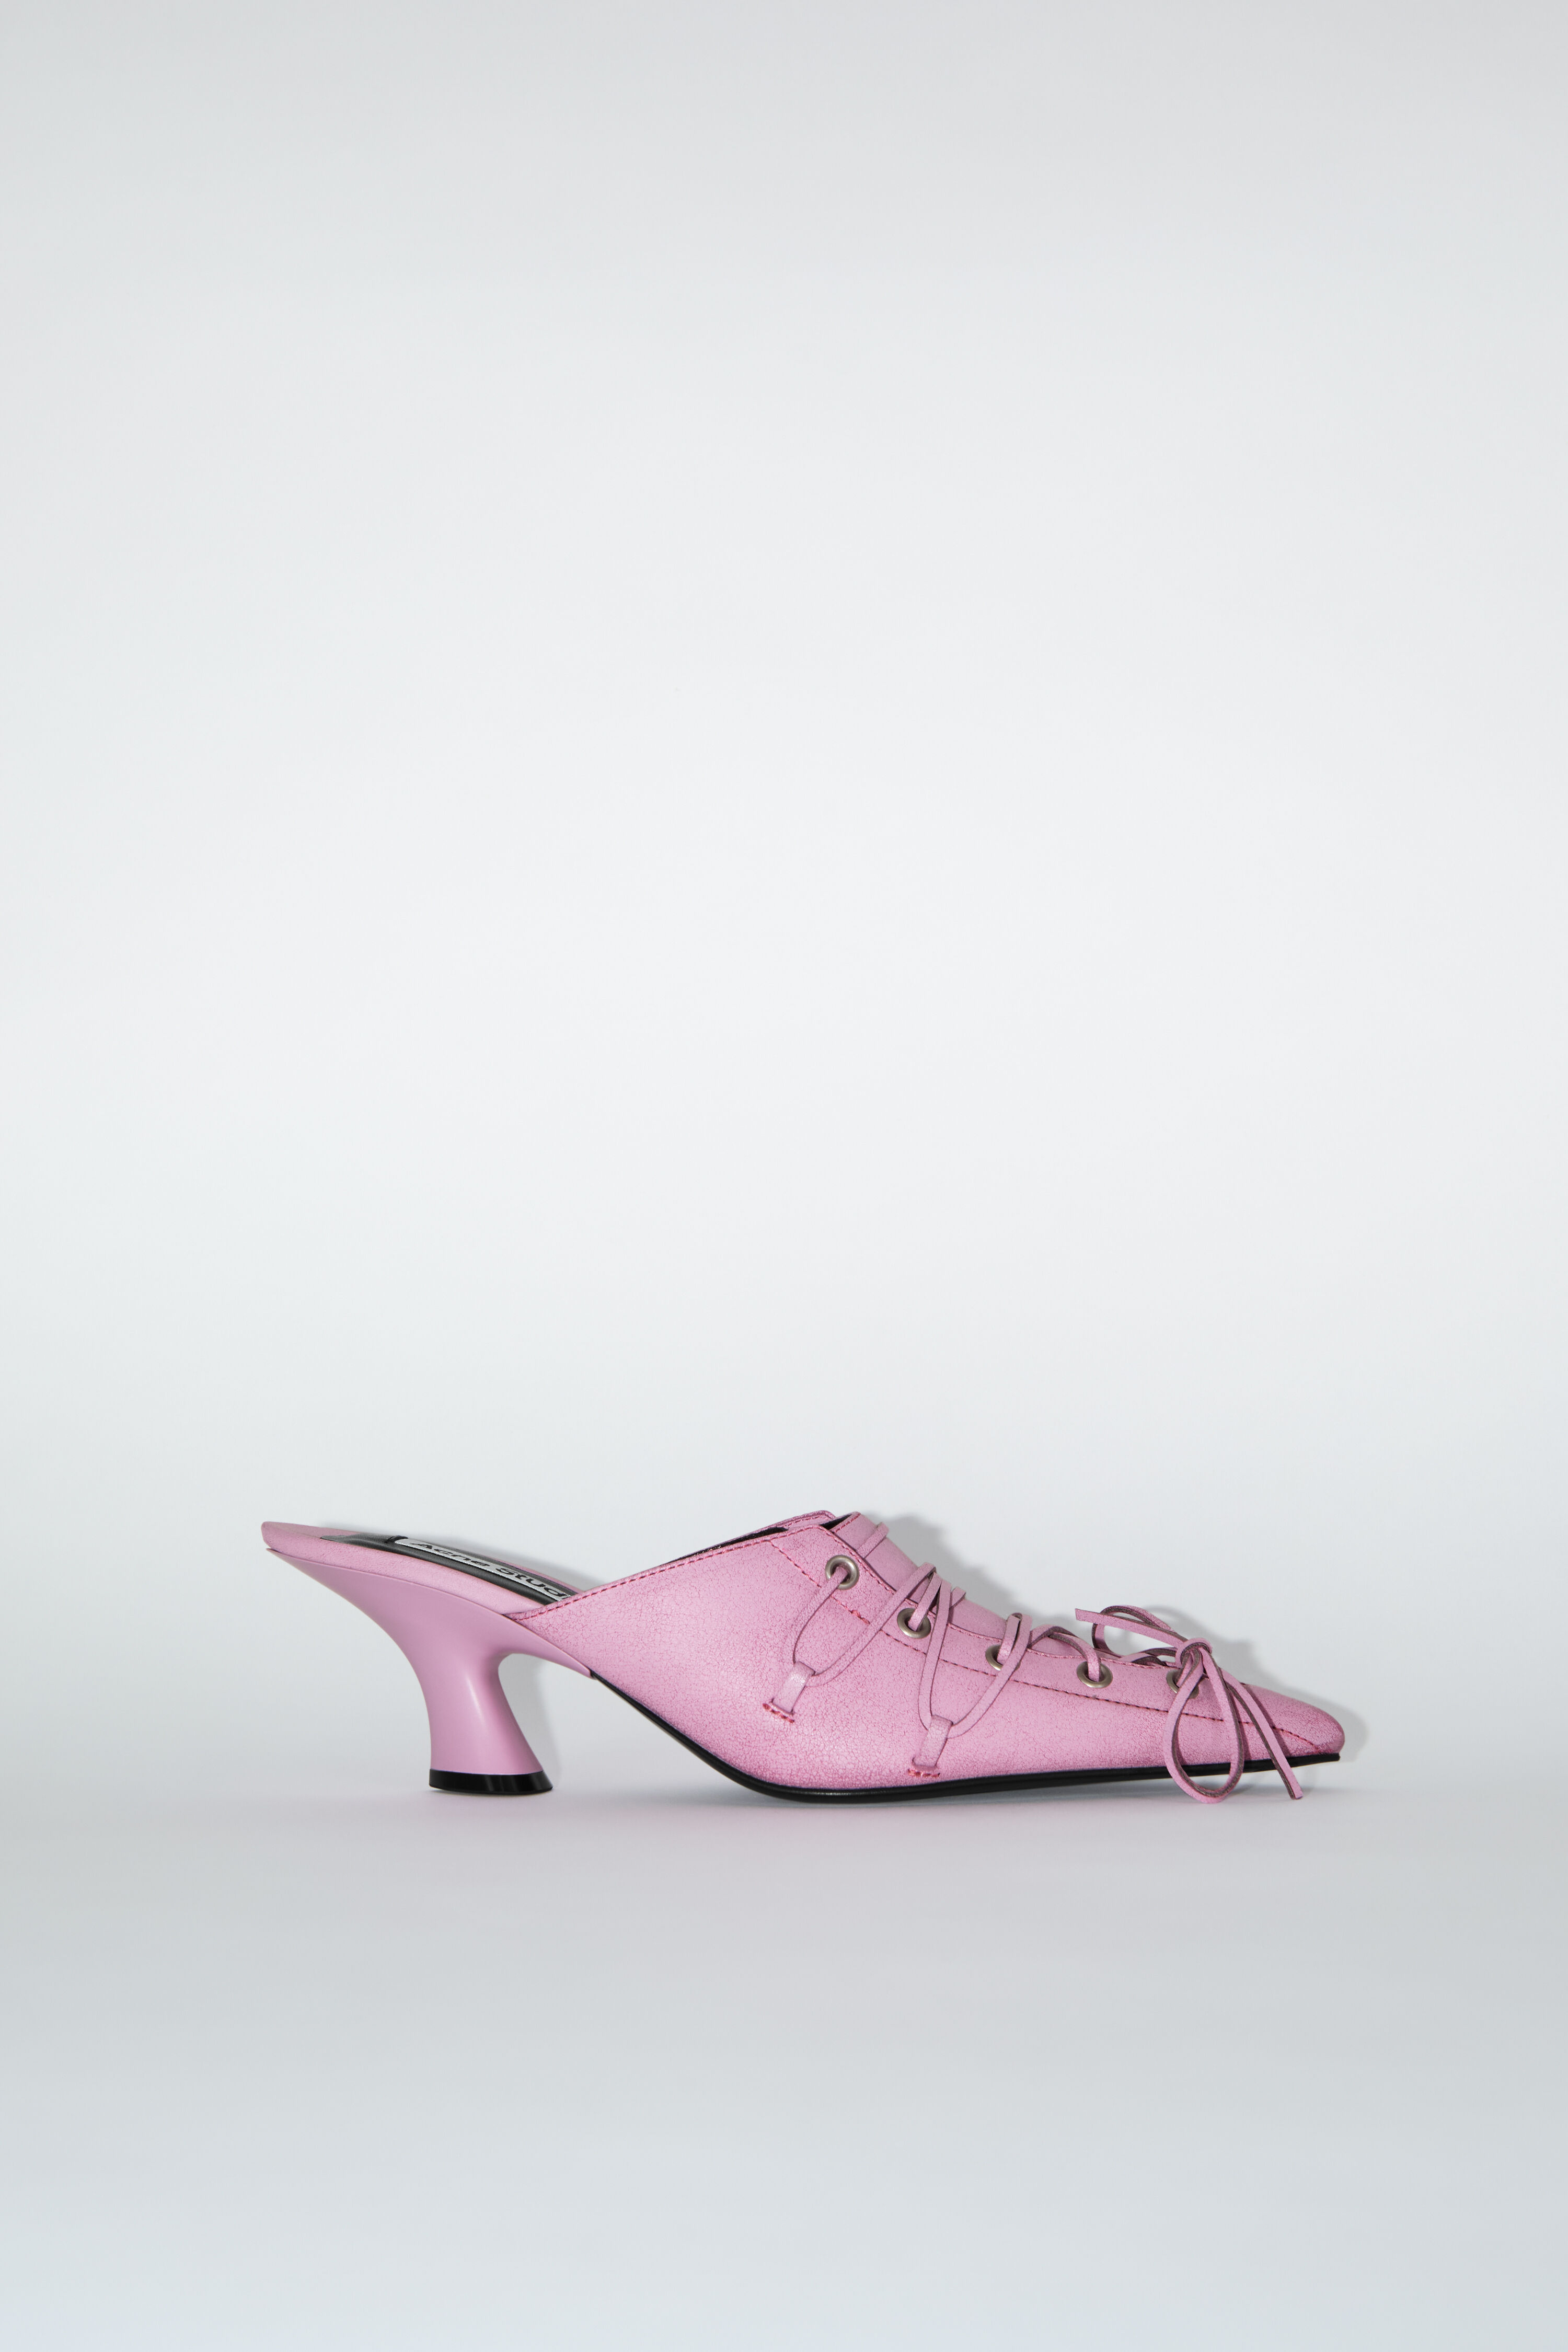 Acne Studios – Women's Shoes